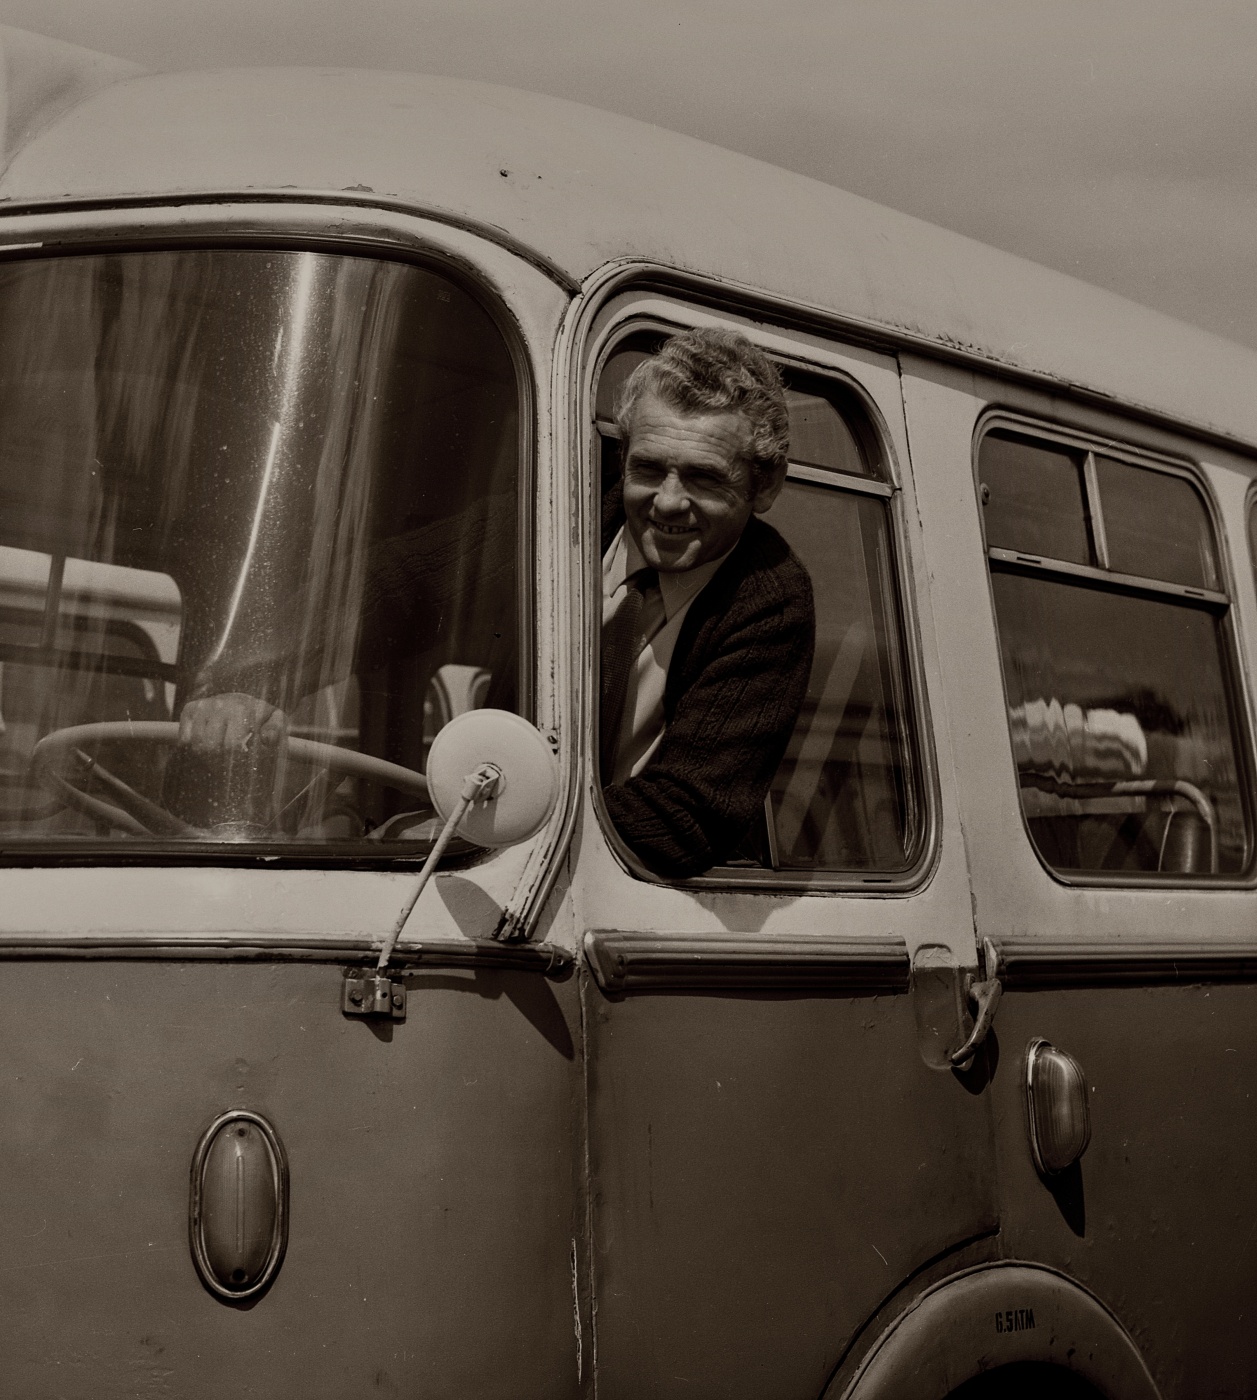 357
Autobus z 1966 roku, stare listwy, klamka, okna, drzwi kierowcy z wytłoczeniem.

Podziękowania za fotografie dla MDK Łazienkowska i MZA.
Słowa kluczowe: MEX272 357 Wycieczka ZajezdniaŁazienkowska 1969